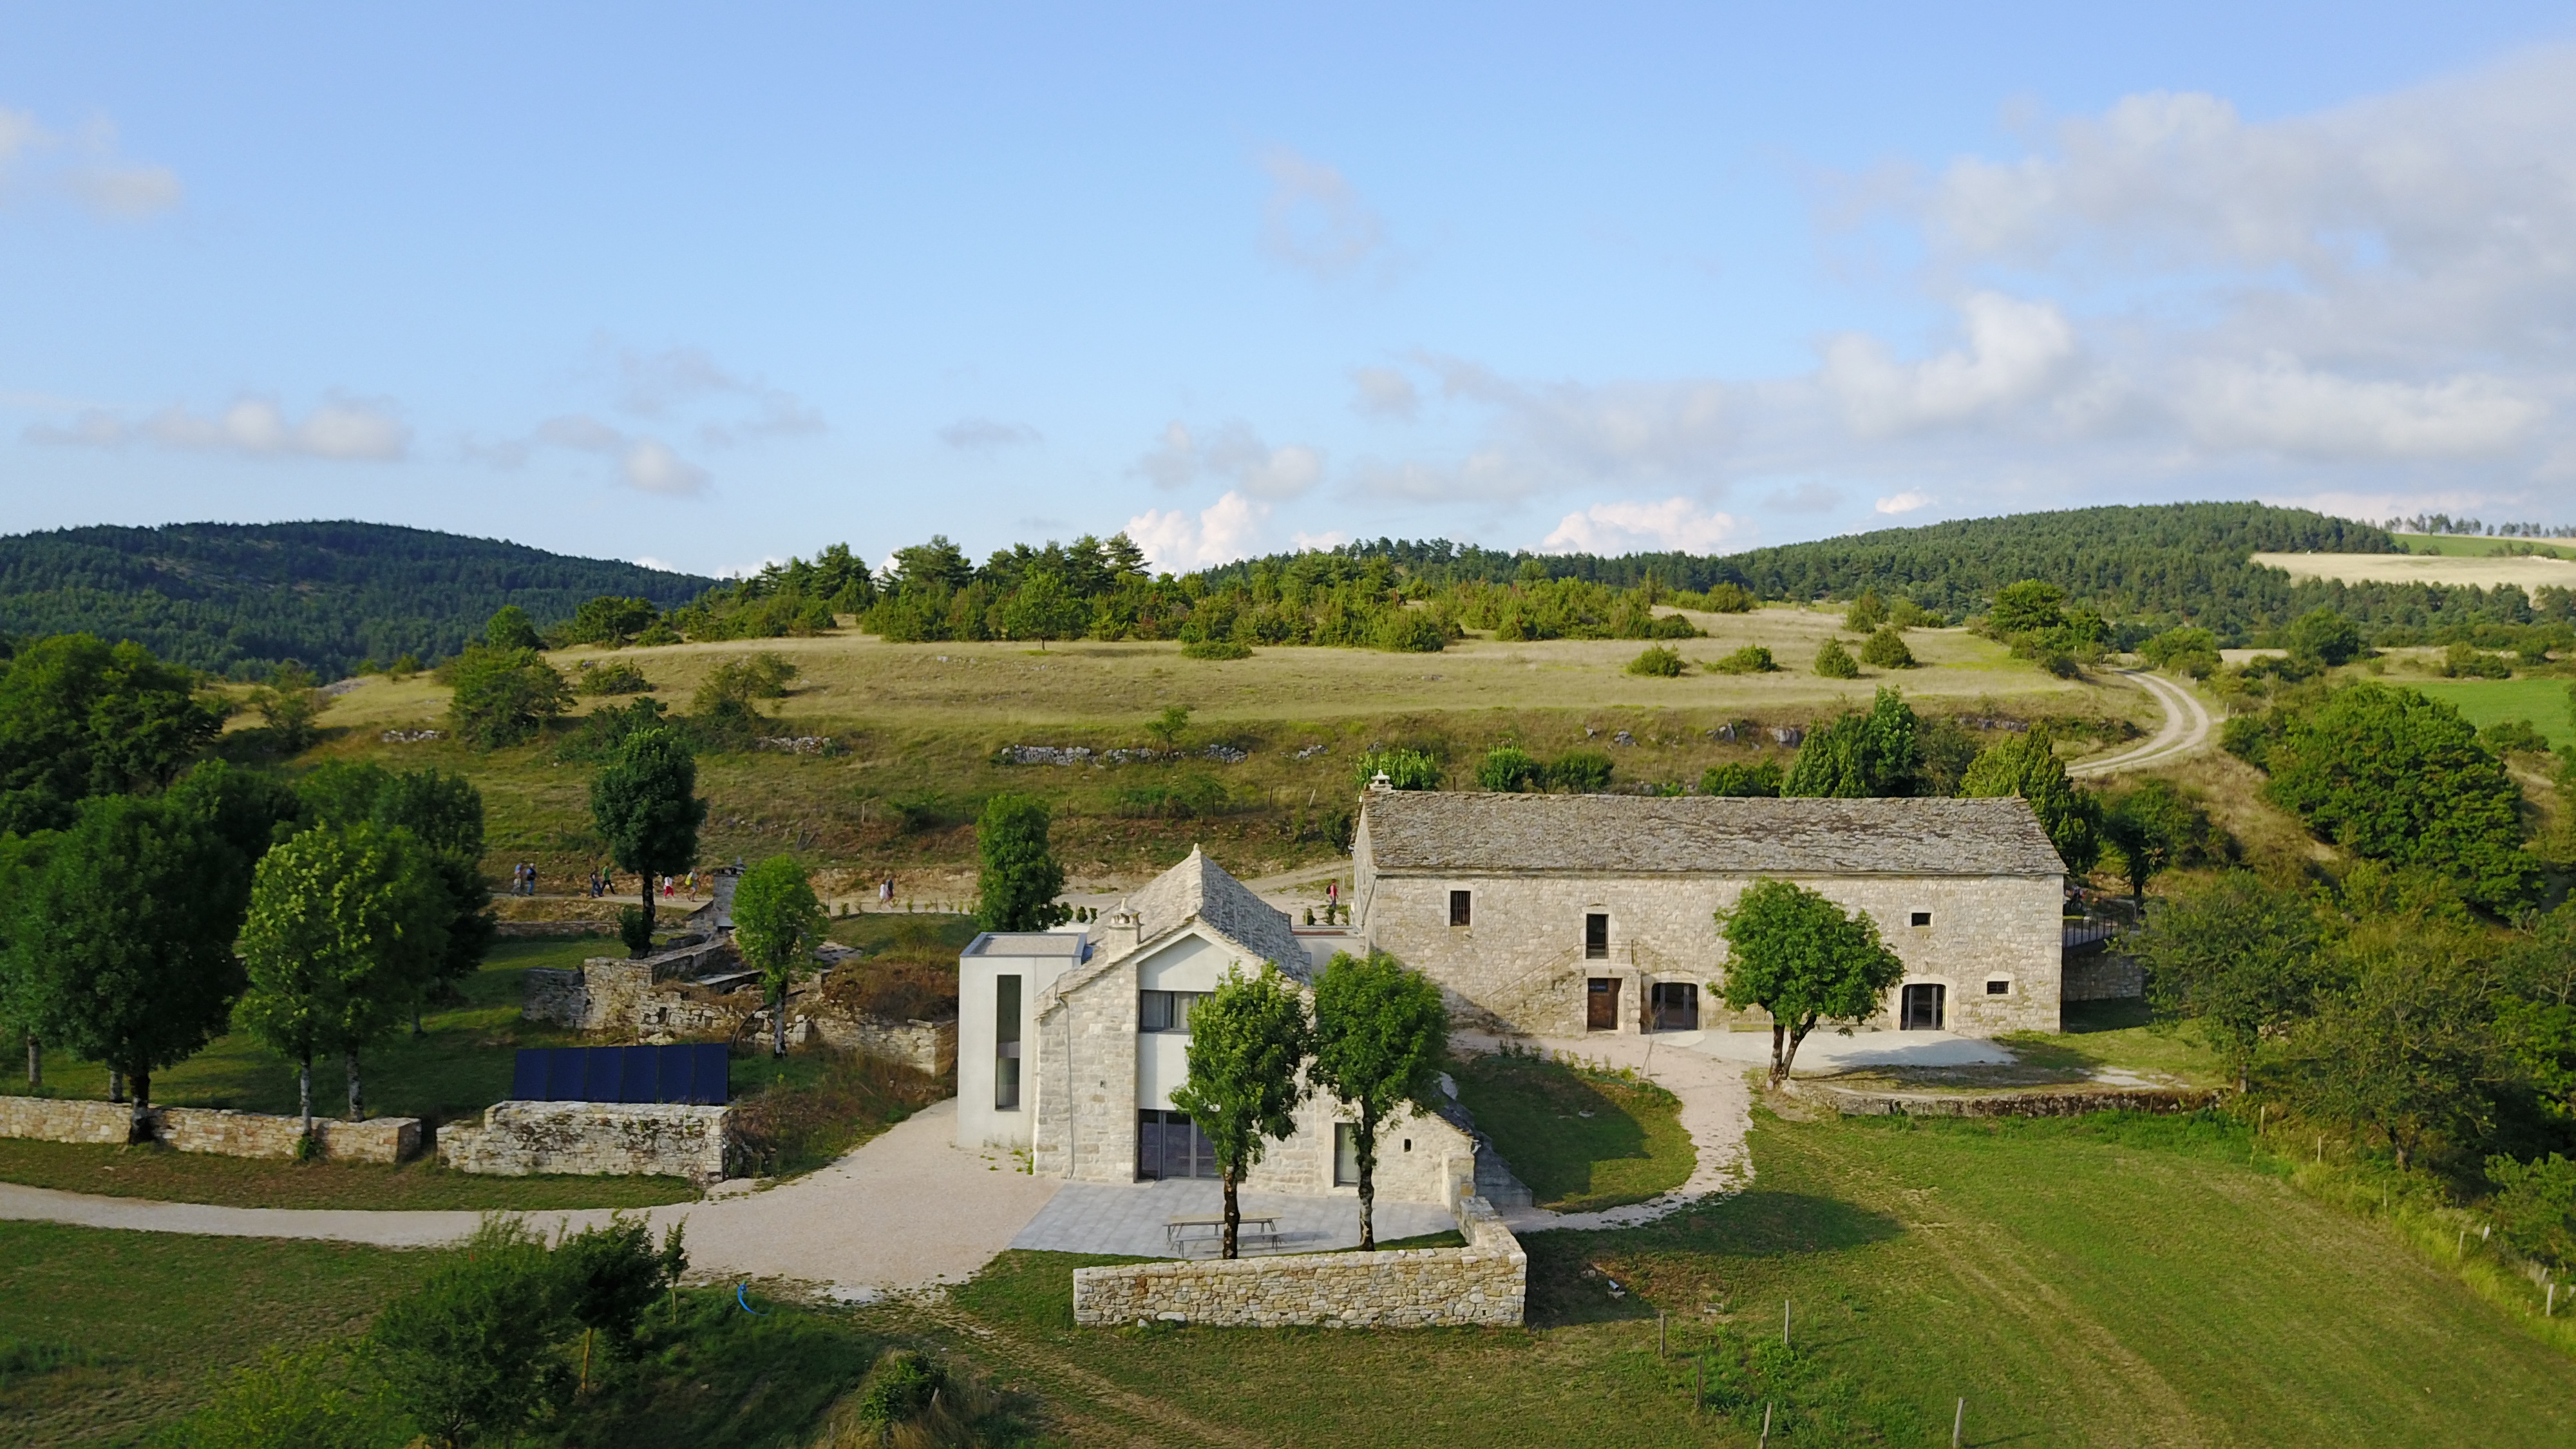 Ferme Seguin : fromage de brebis, visite de la ferme, gites ruraux en  Aveyron